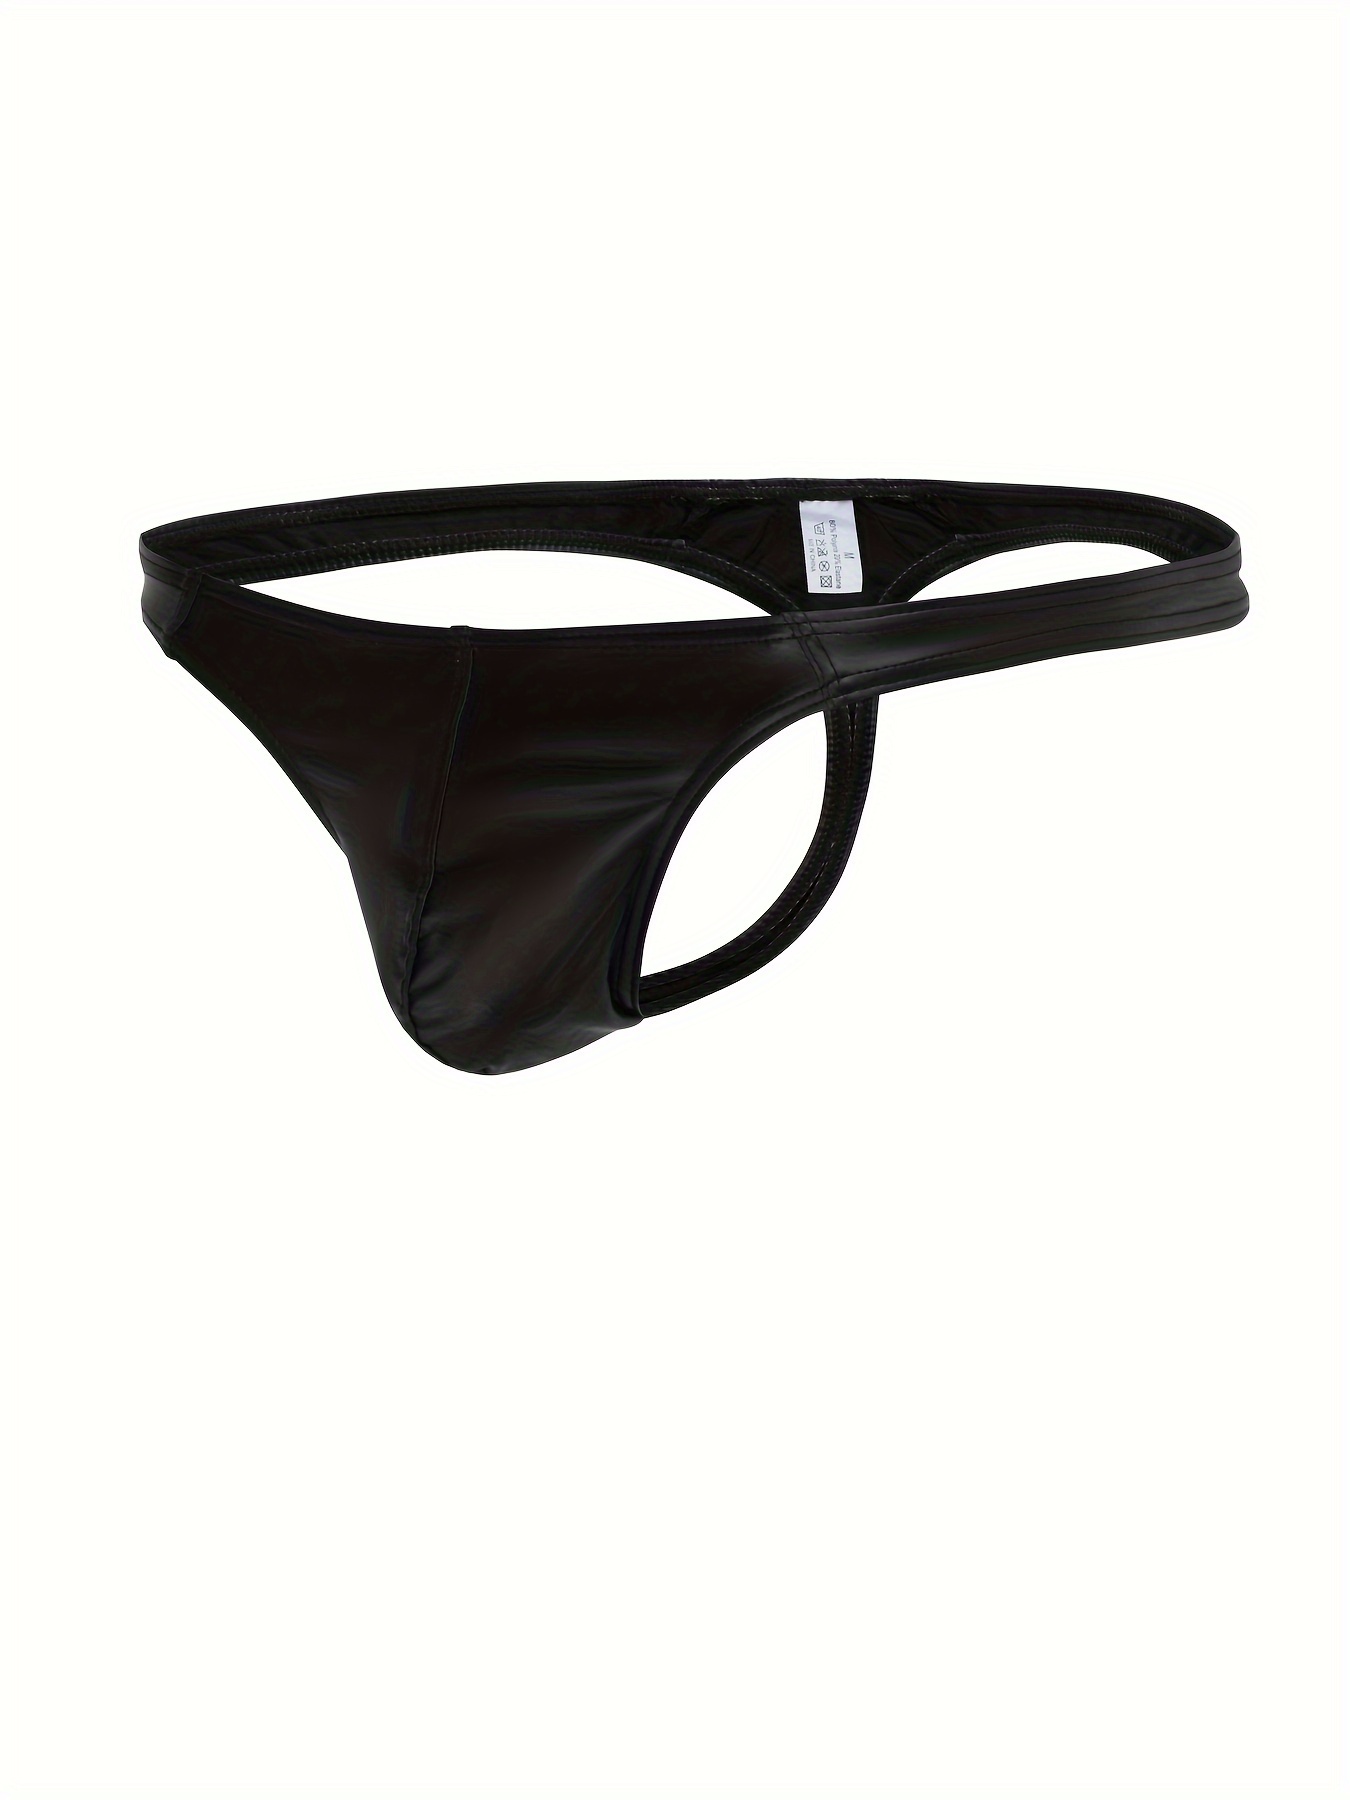 Women's Leather Open Crotch Knickers Jockstrap G-string Thong Briefs  Underwear